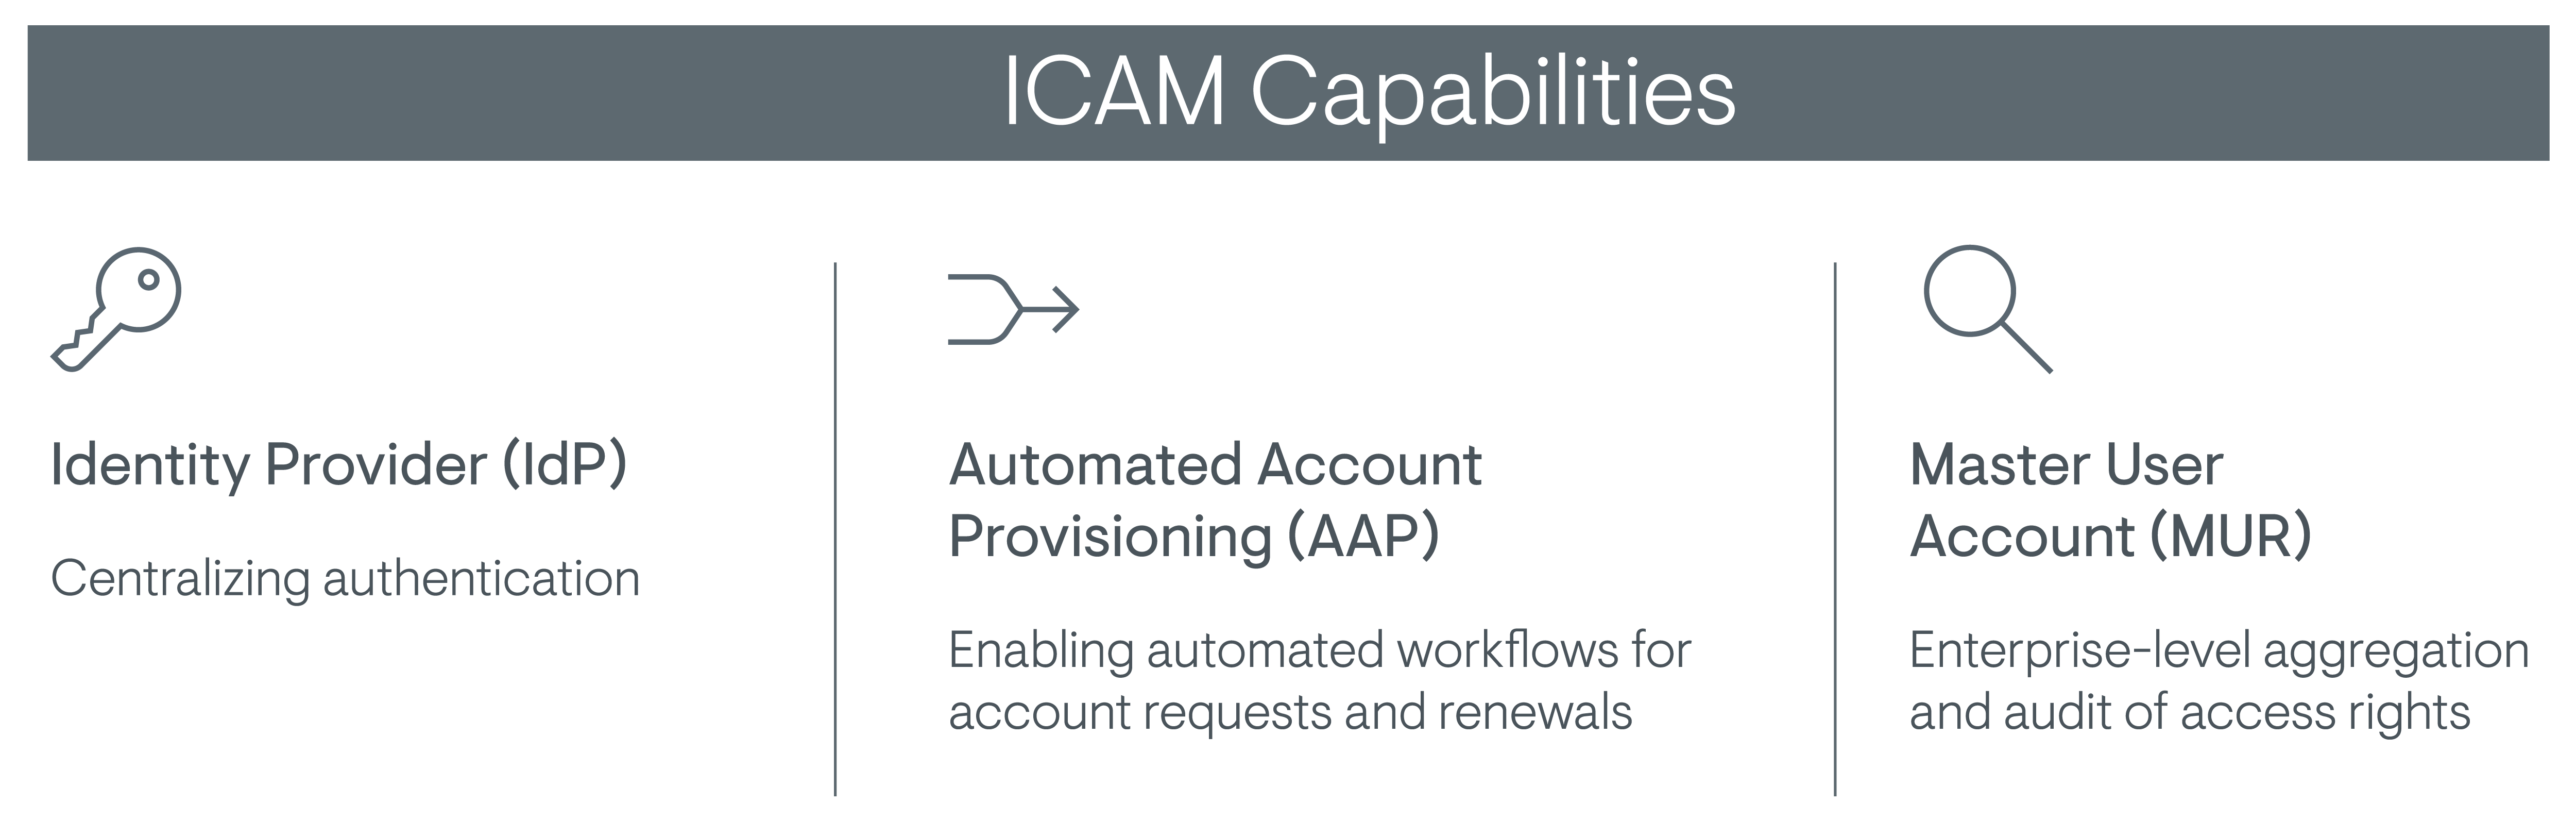 ICAM-Capabilities-1200px-transparent